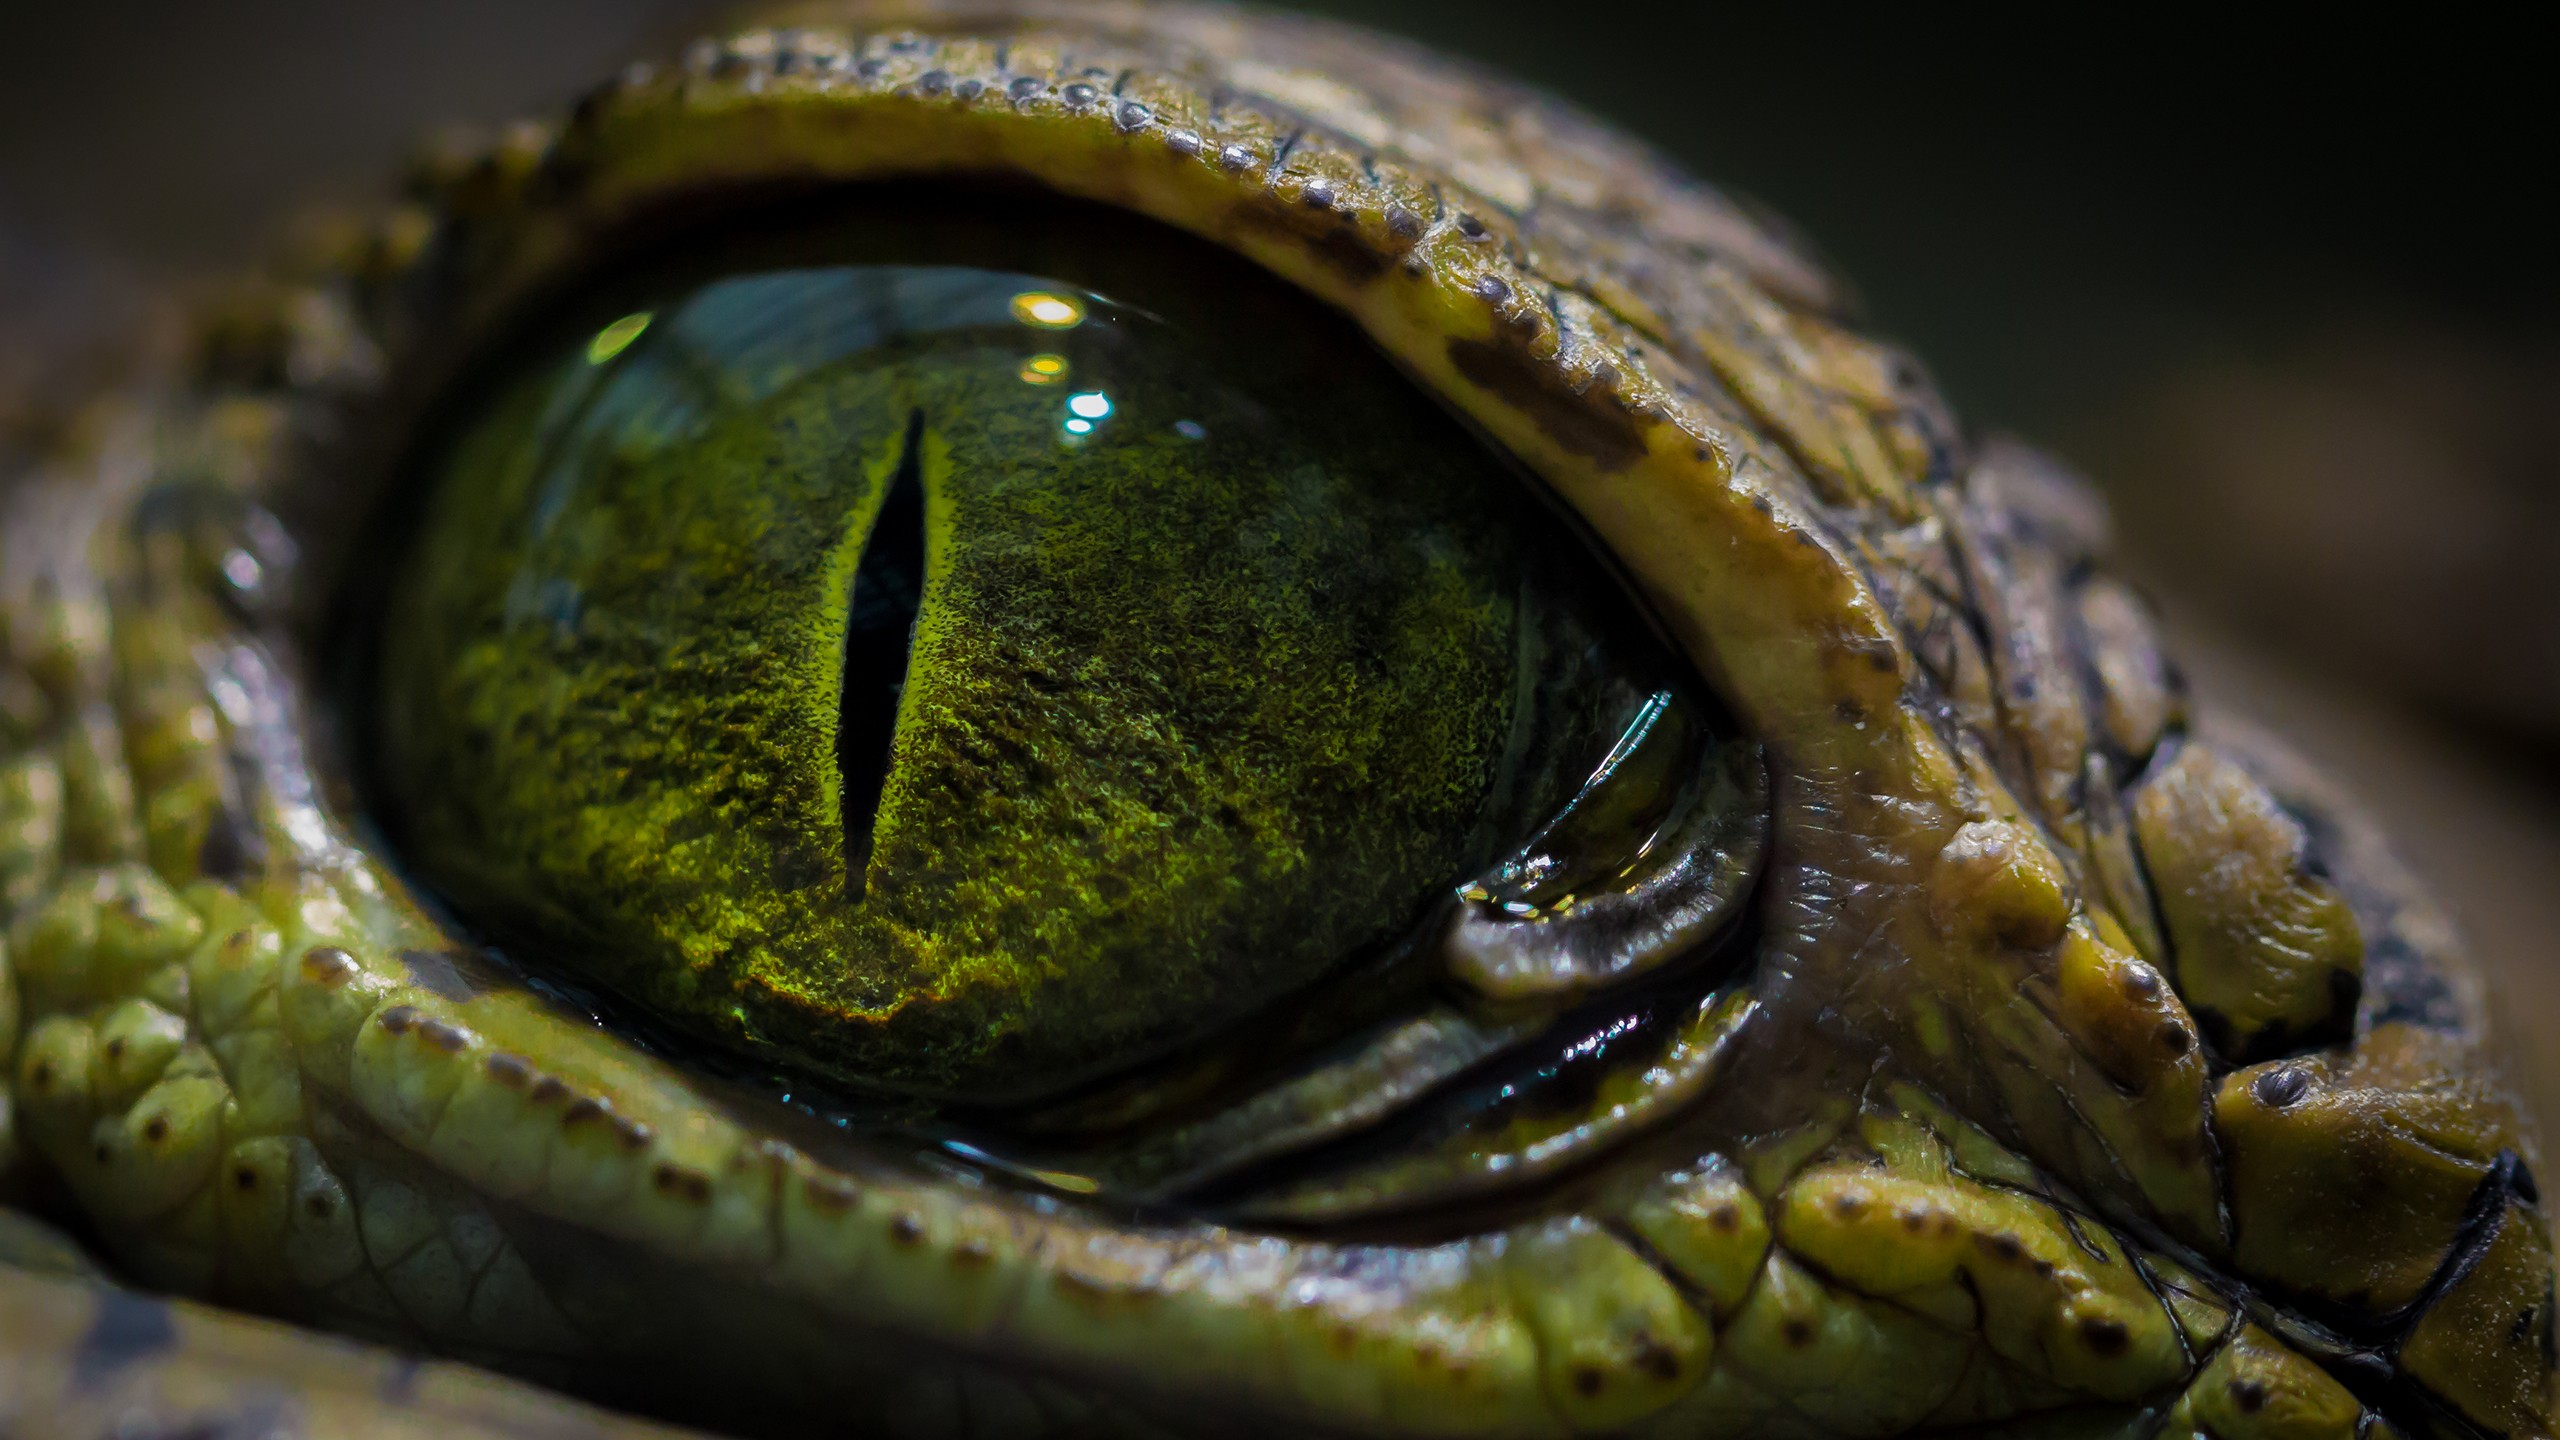 General 2560x1440 eyes macro crocodiles reptiles animal eyes